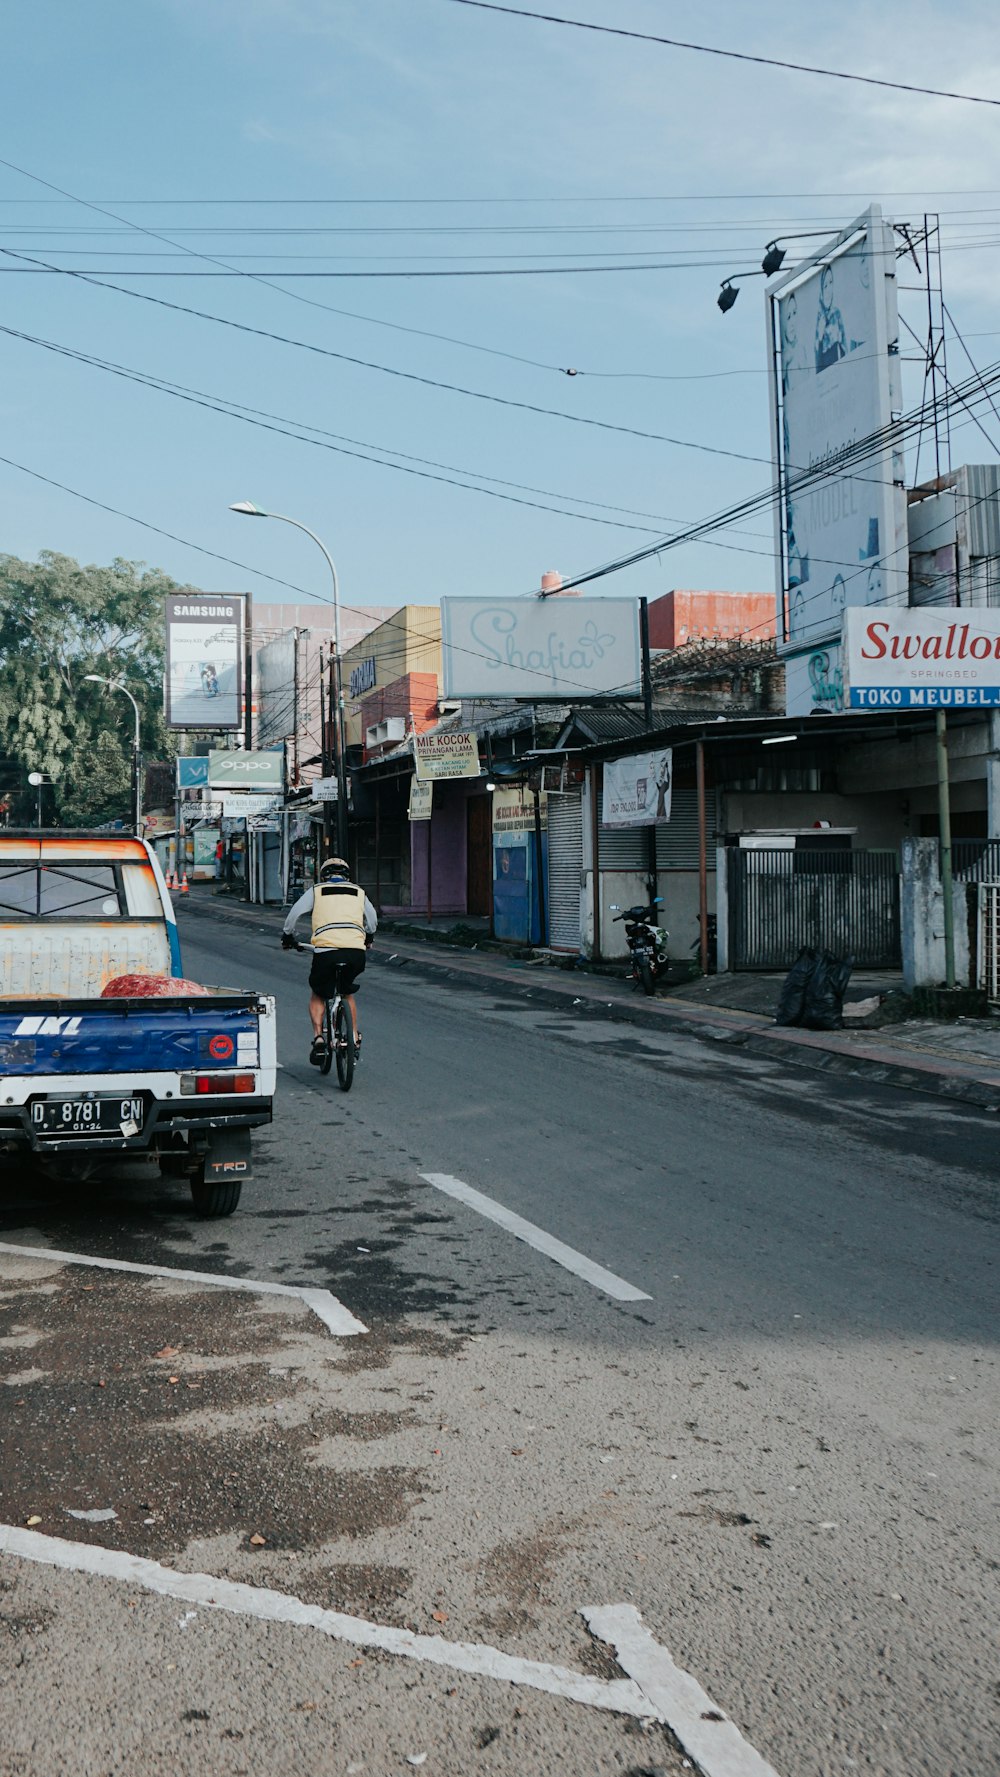 a man riding a bike down a street next to a truck